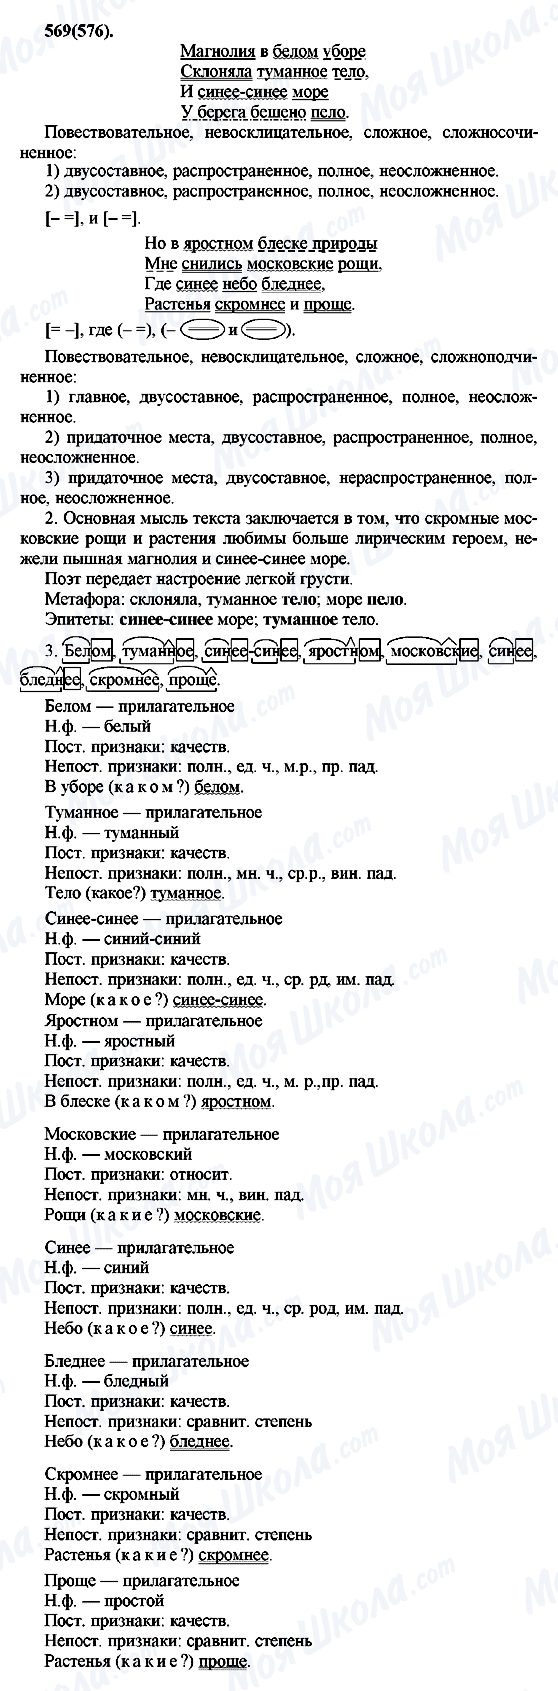 ГДЗ Русский язык 7 класс страница 569(576)